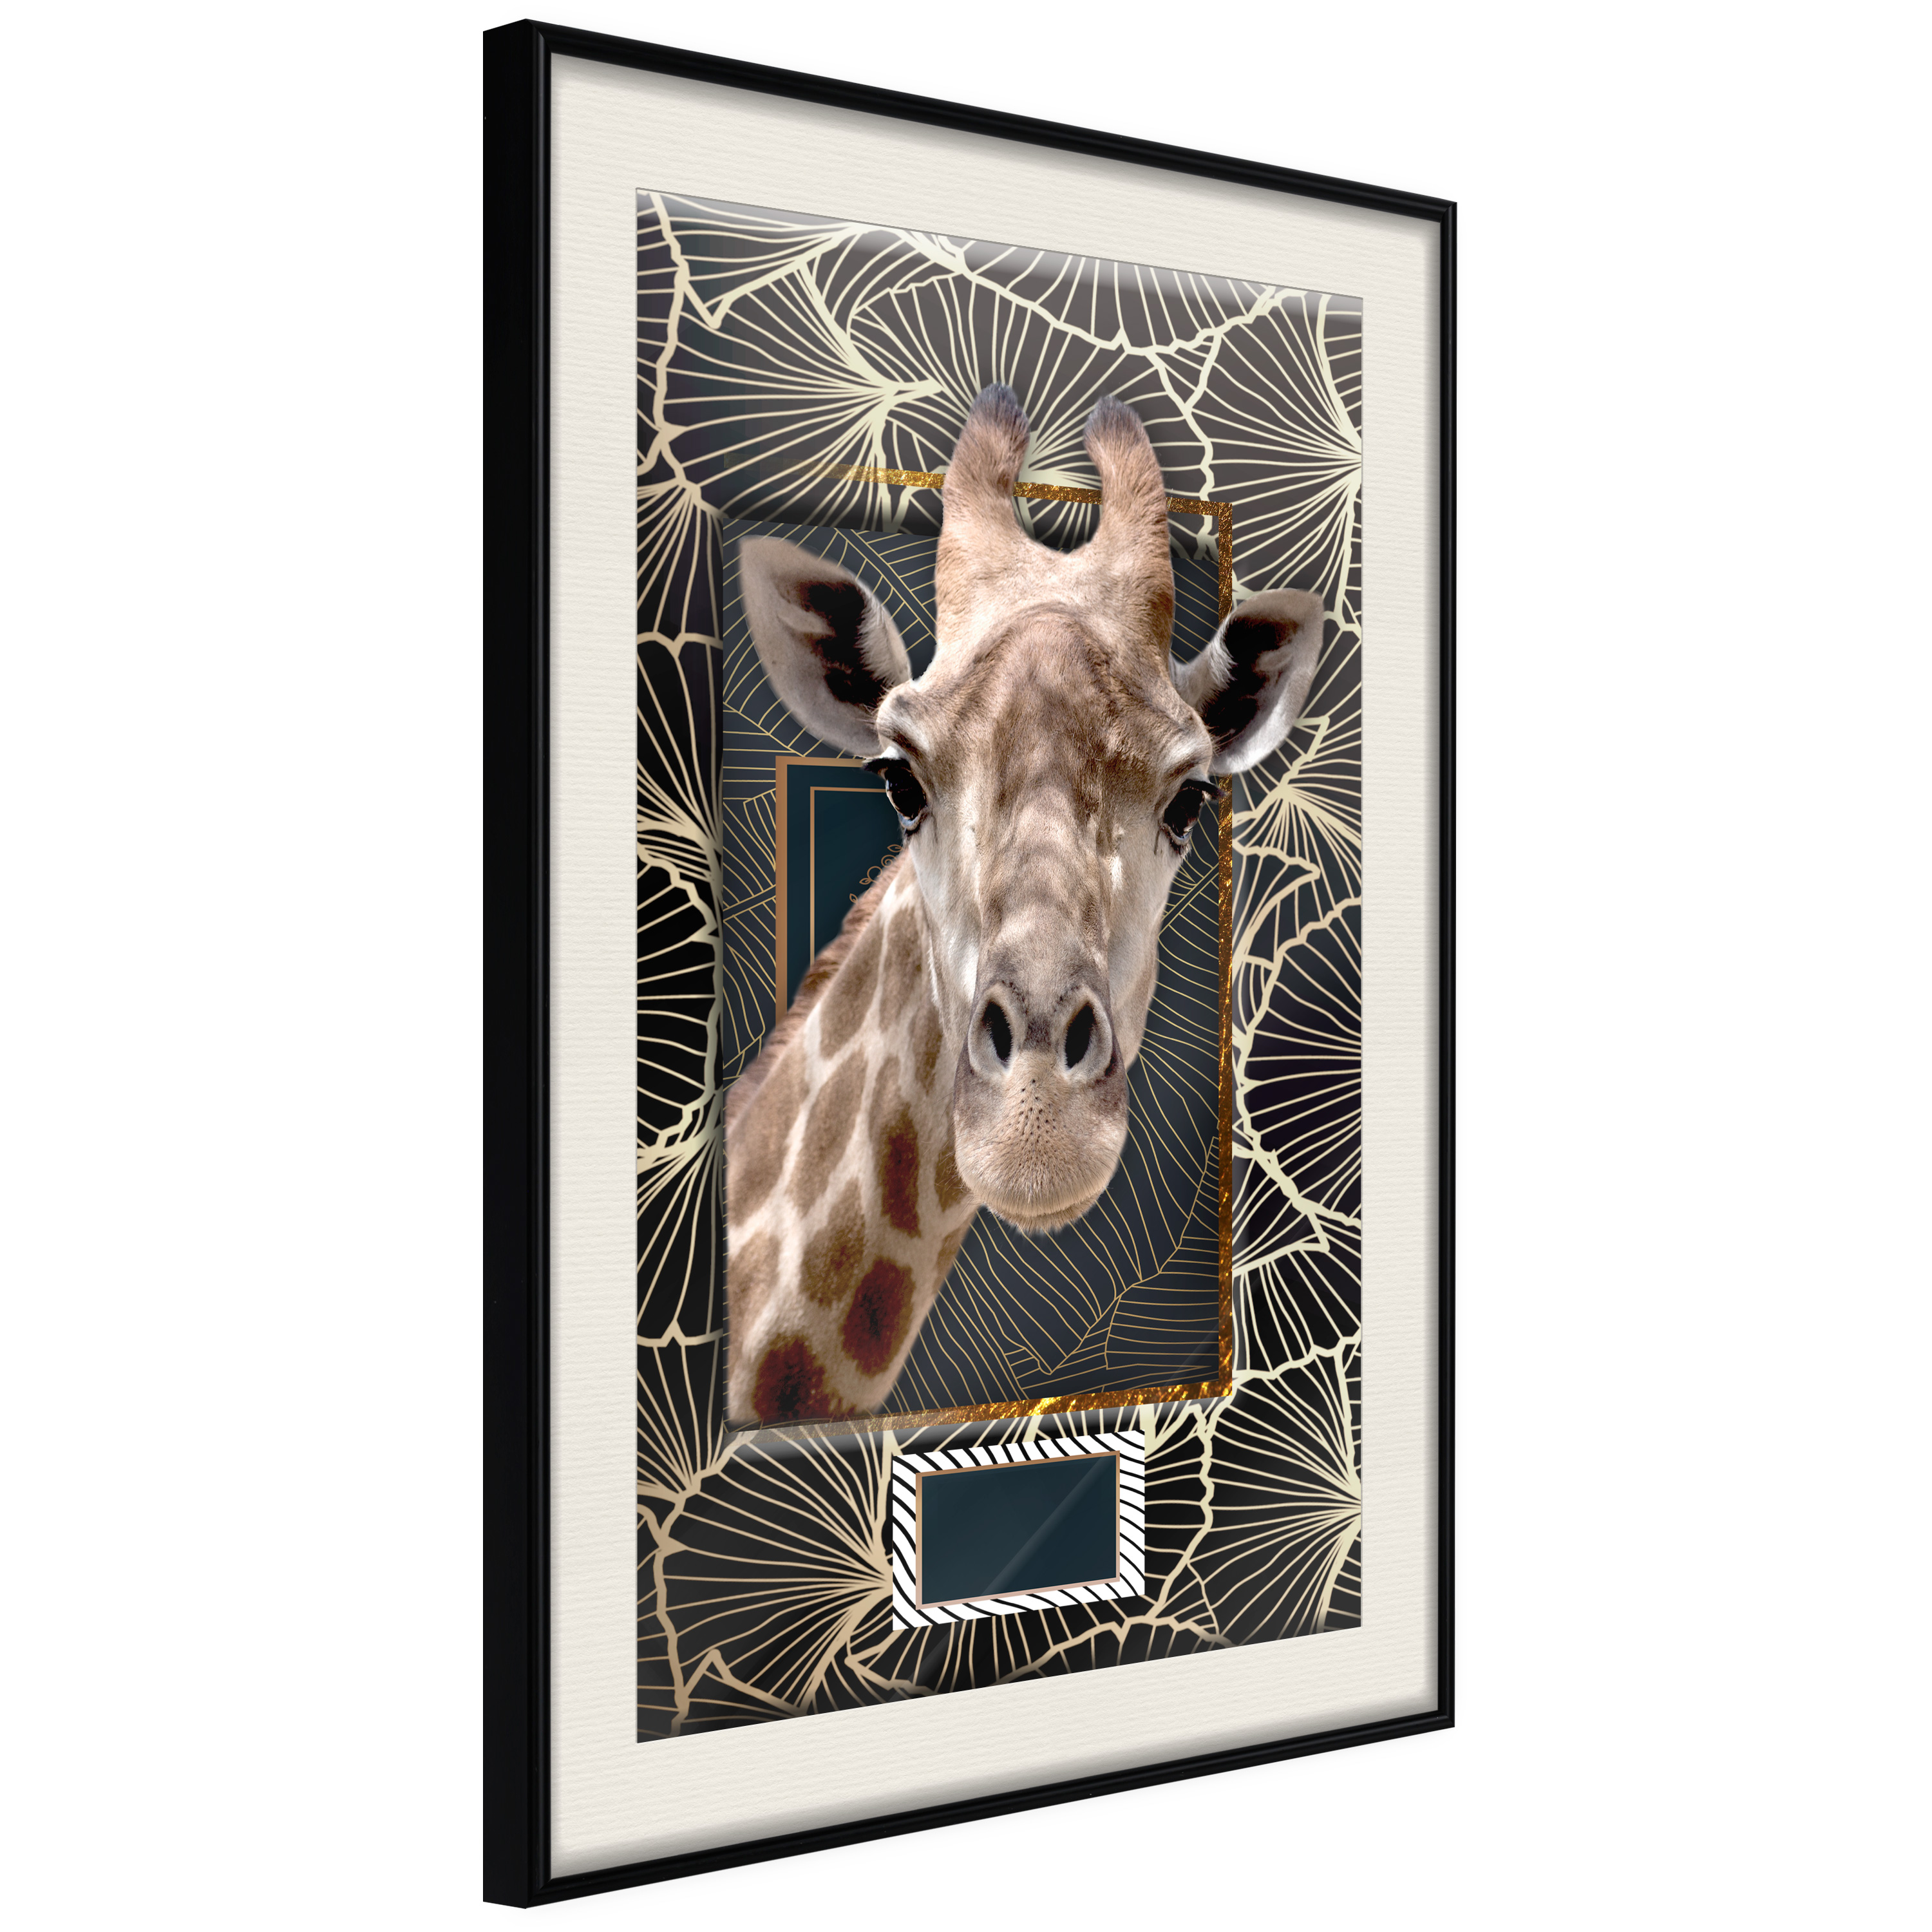 Poster - Giraffe in the Frame - 40x60